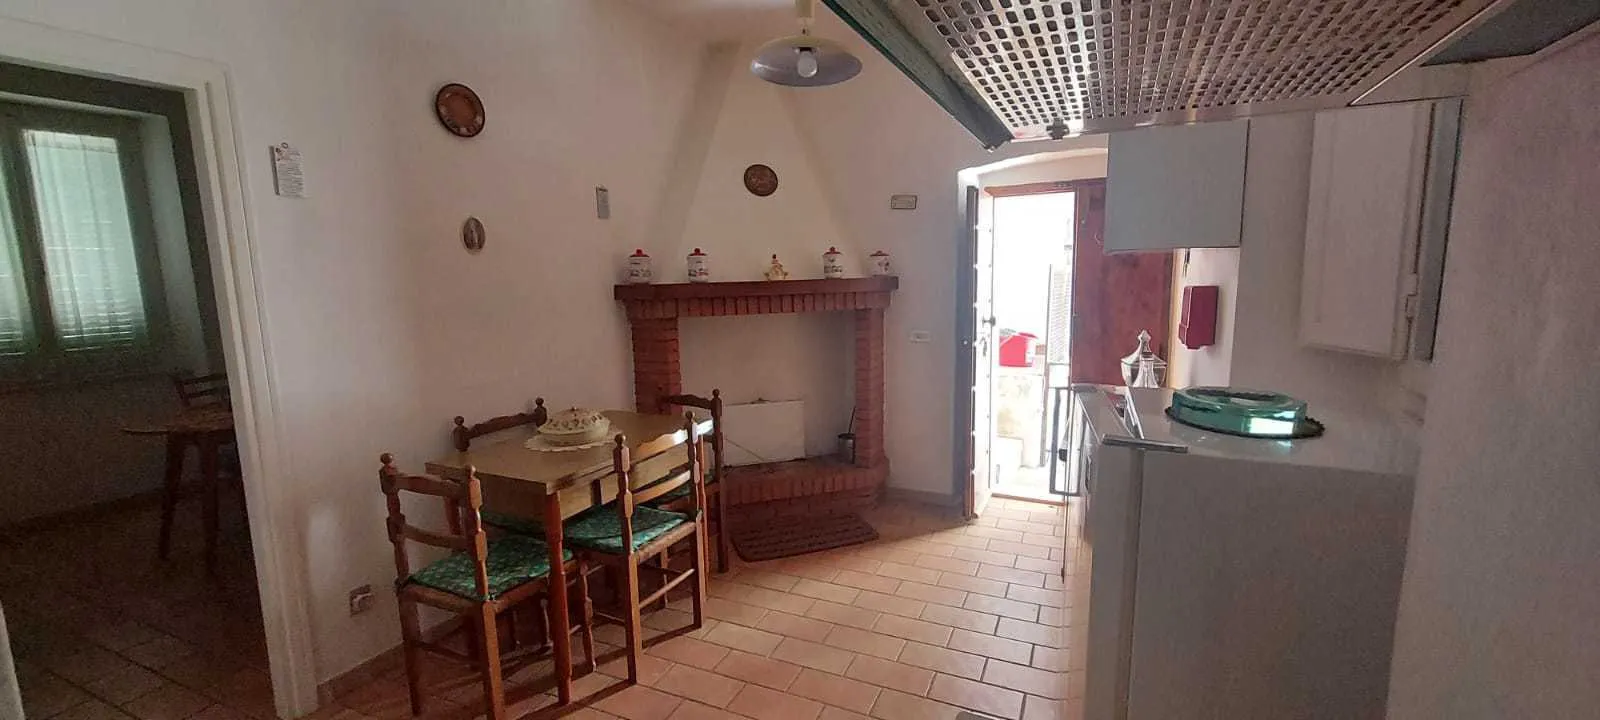 Immagine per Porzione di casa in vendita a Todi via Sp 417